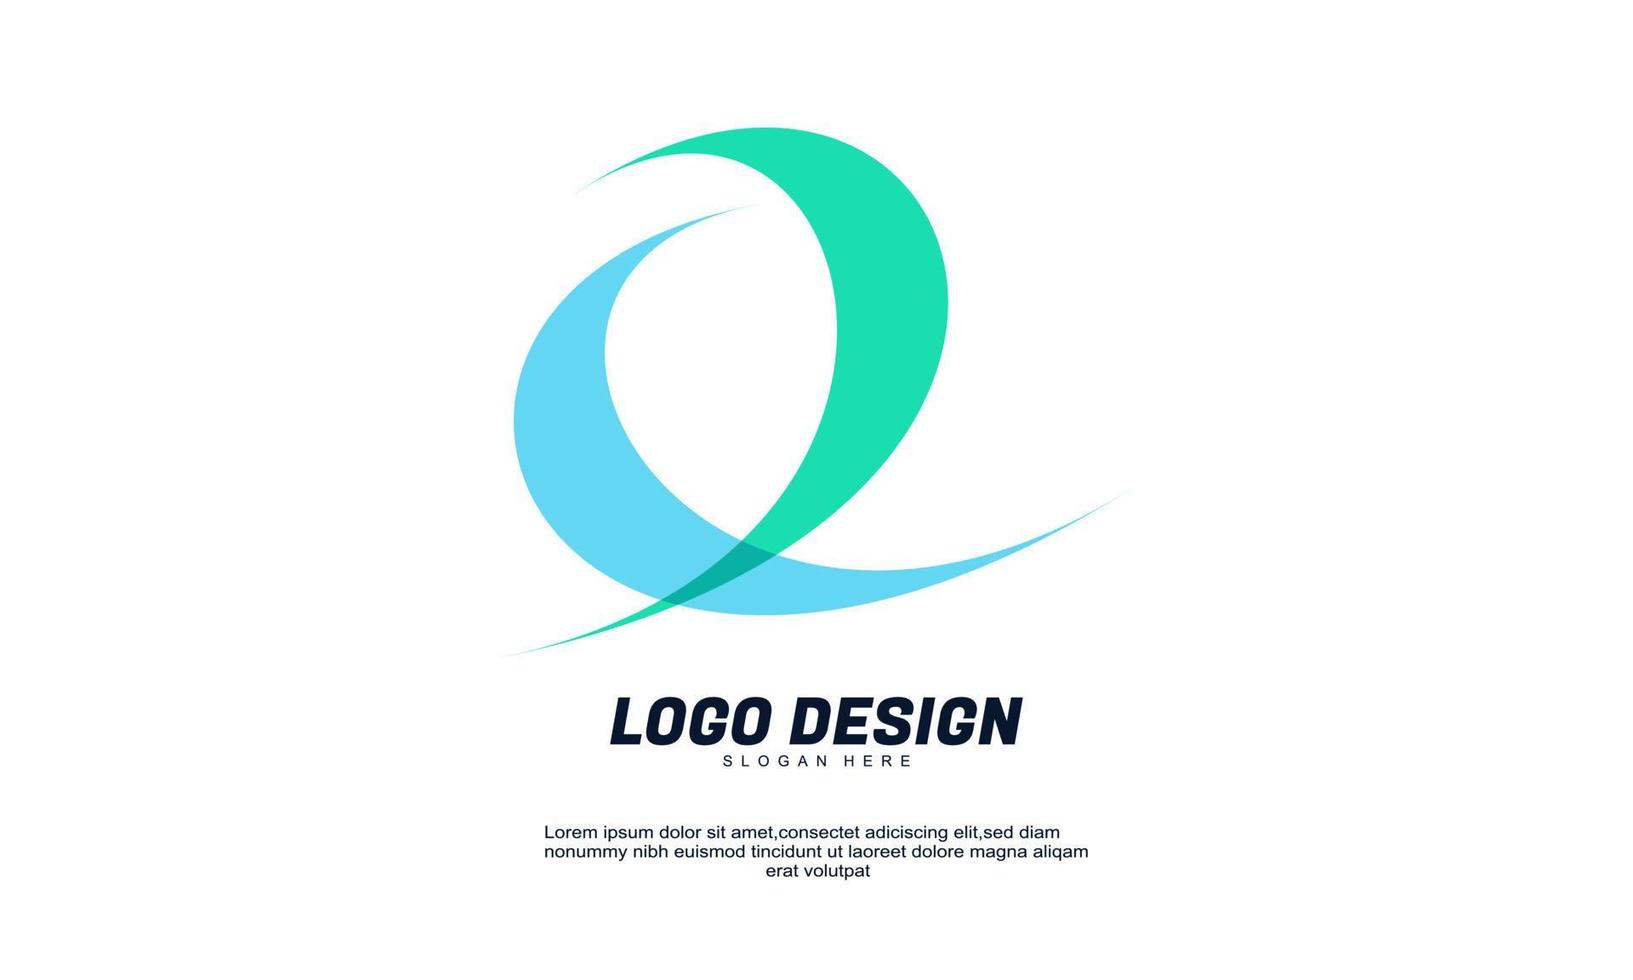 elemento de logotipo de diseño de icono moderno creativo abstracto con plantilla de negocio de empresa mejor para vector de logotipo de identidad y diseño